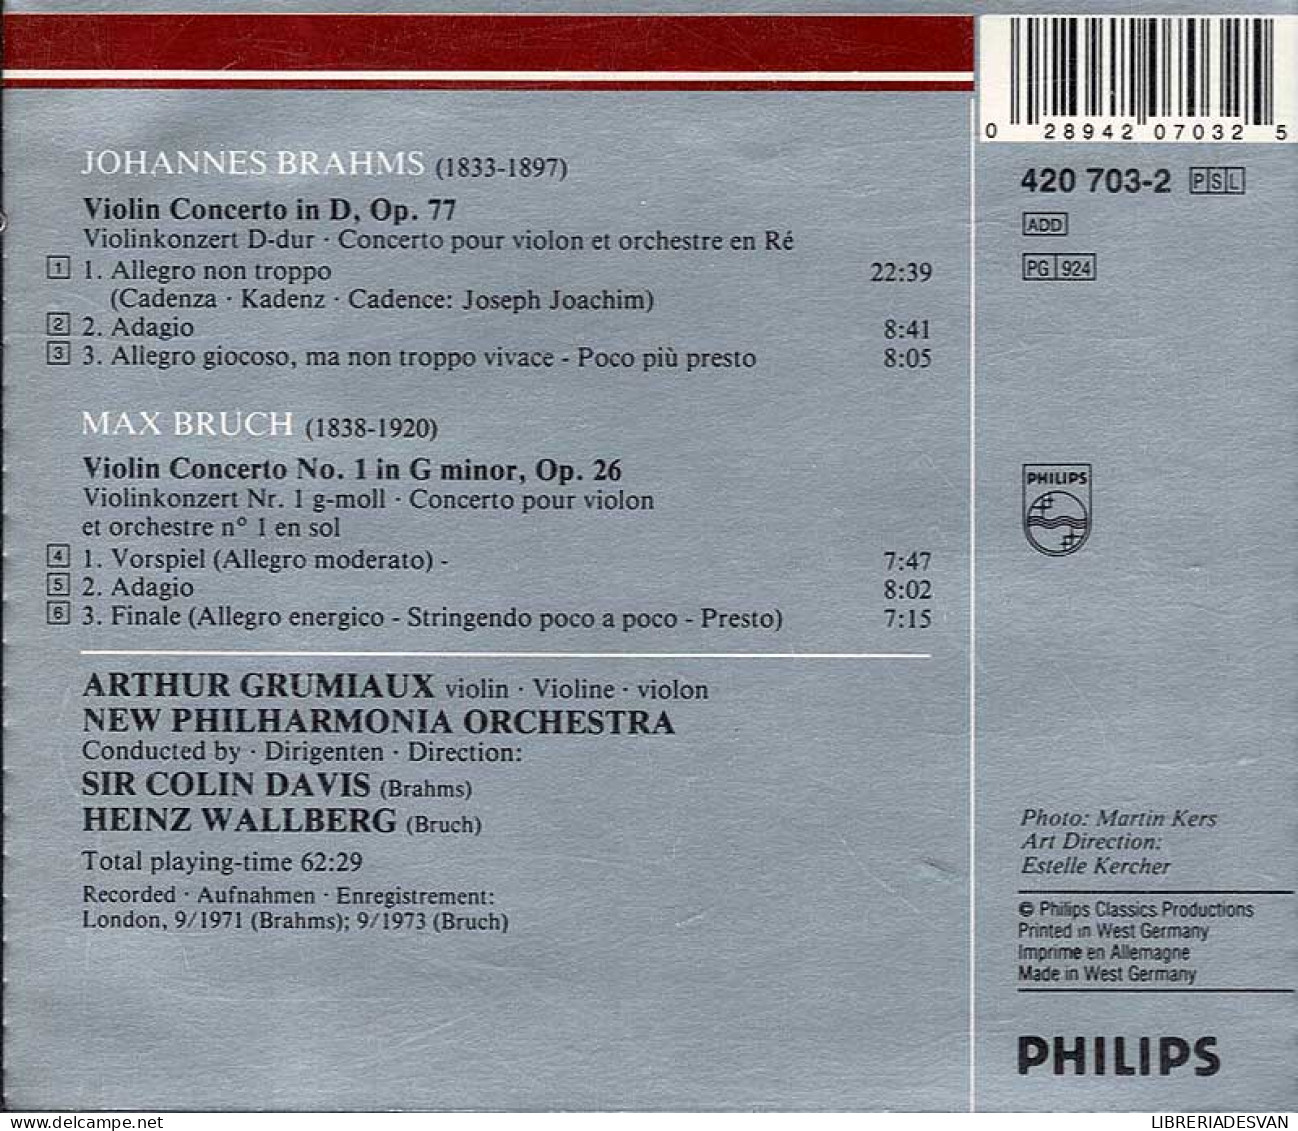 Brahms: Violin Concerto Op.77, Bruch: Violin Concerto No.1. CD - Classica